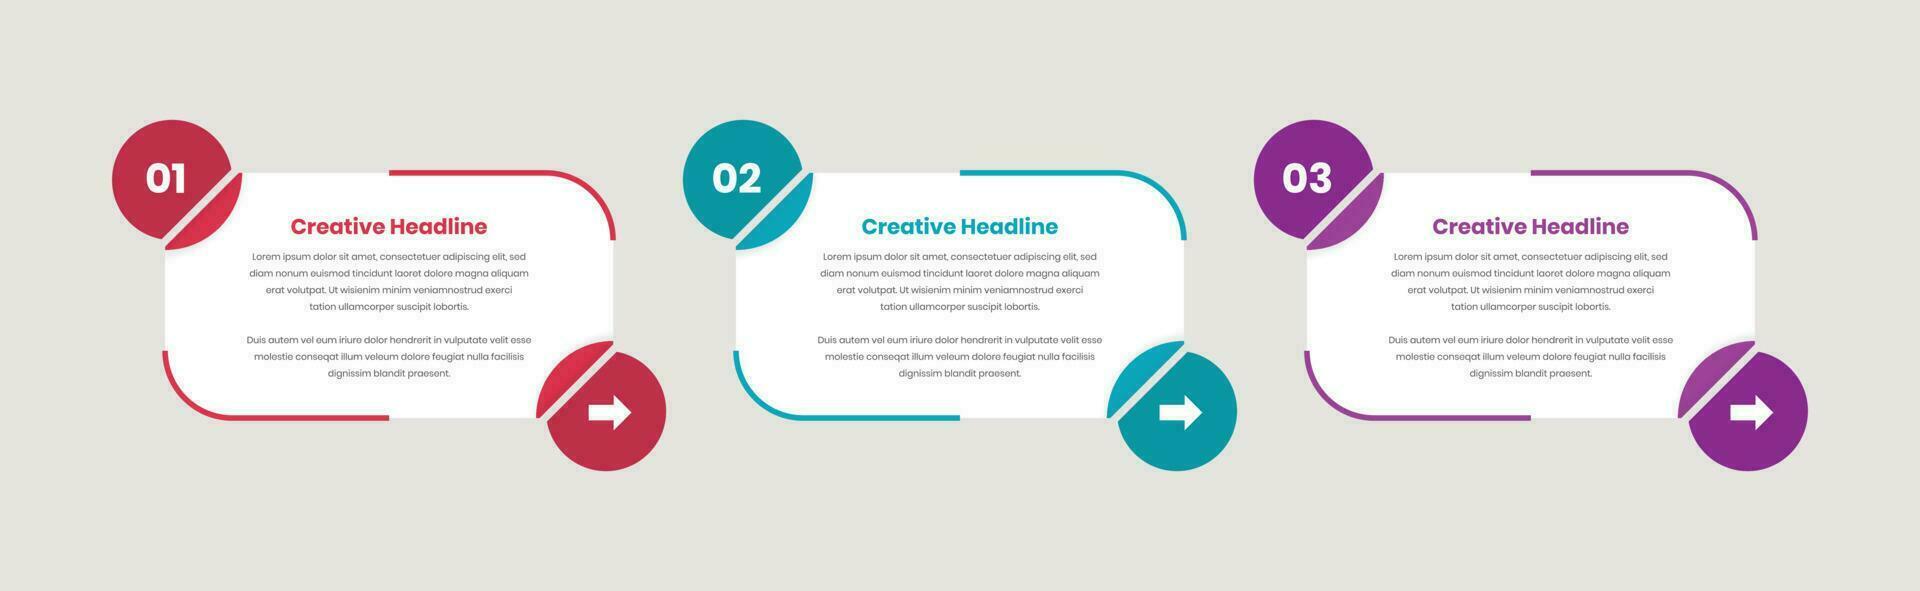 företag steg visualisering infographic layout för text presentation vektor